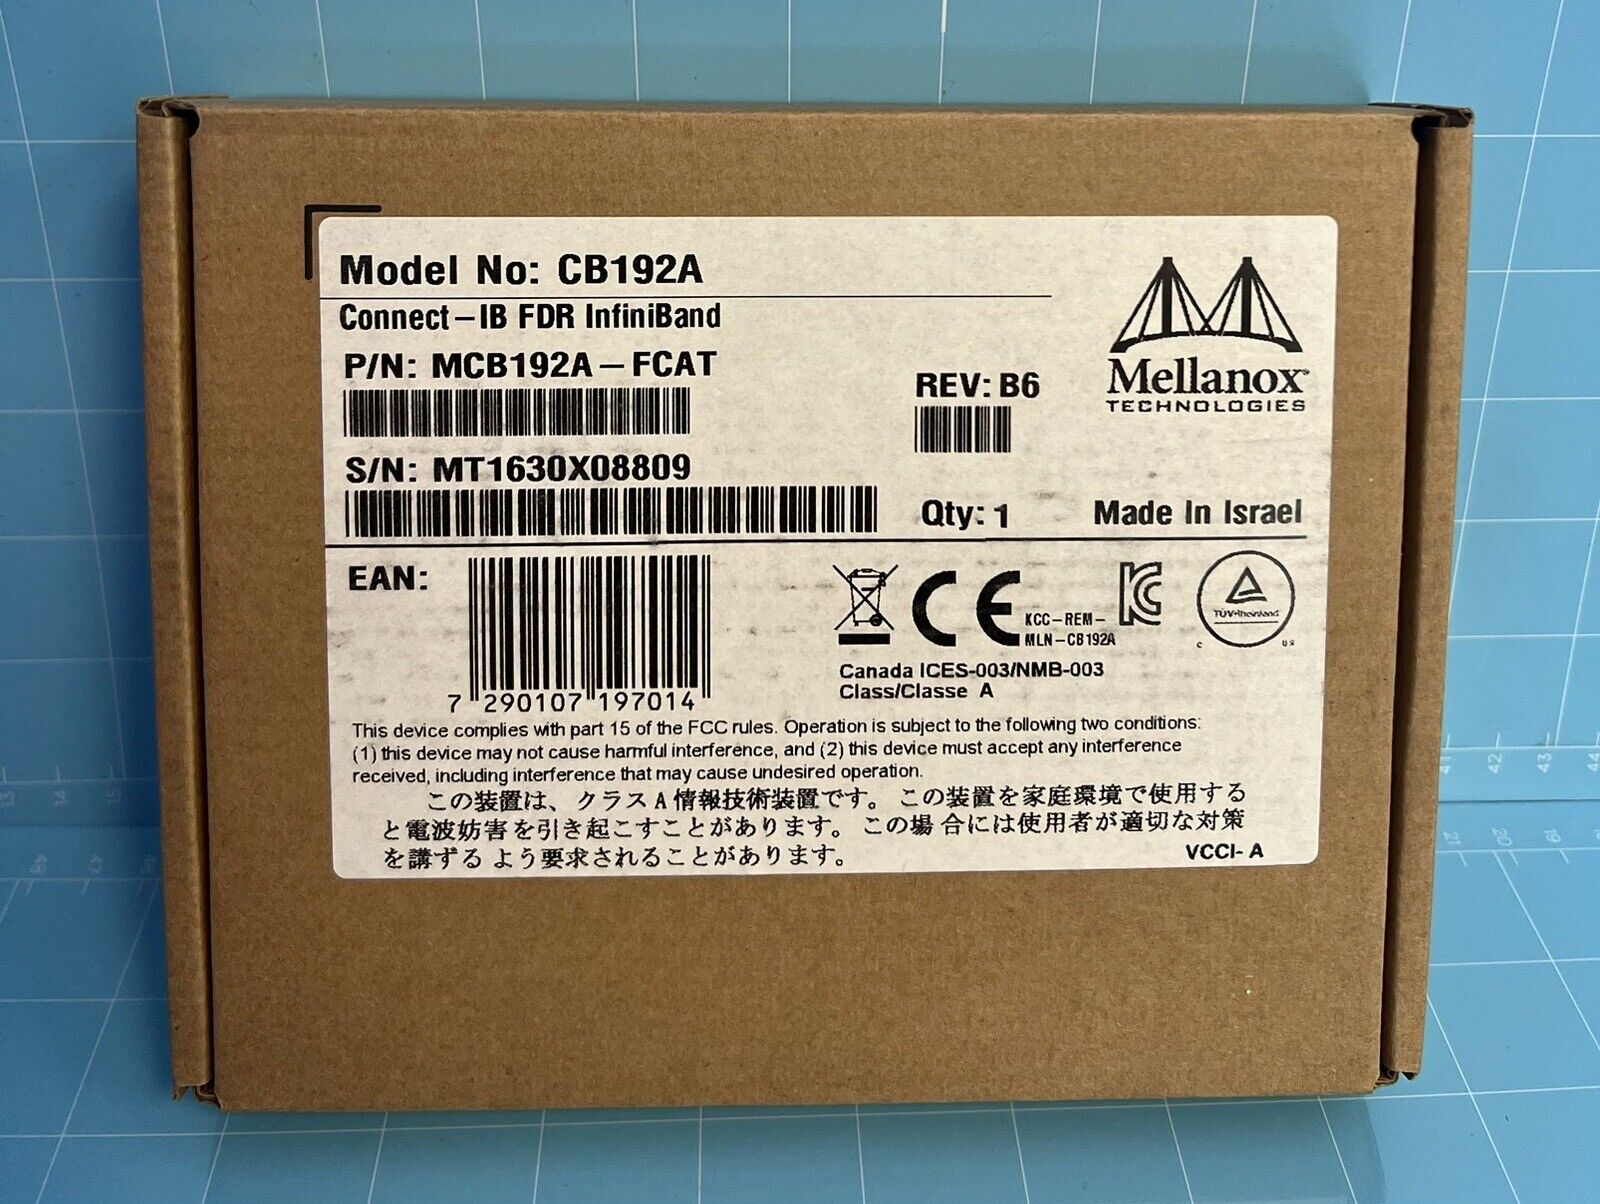 Mellanox MCB192A-FCAT Connect-IB FDR Infiniband 56Gb/s 2Port Adapter Card CB192A